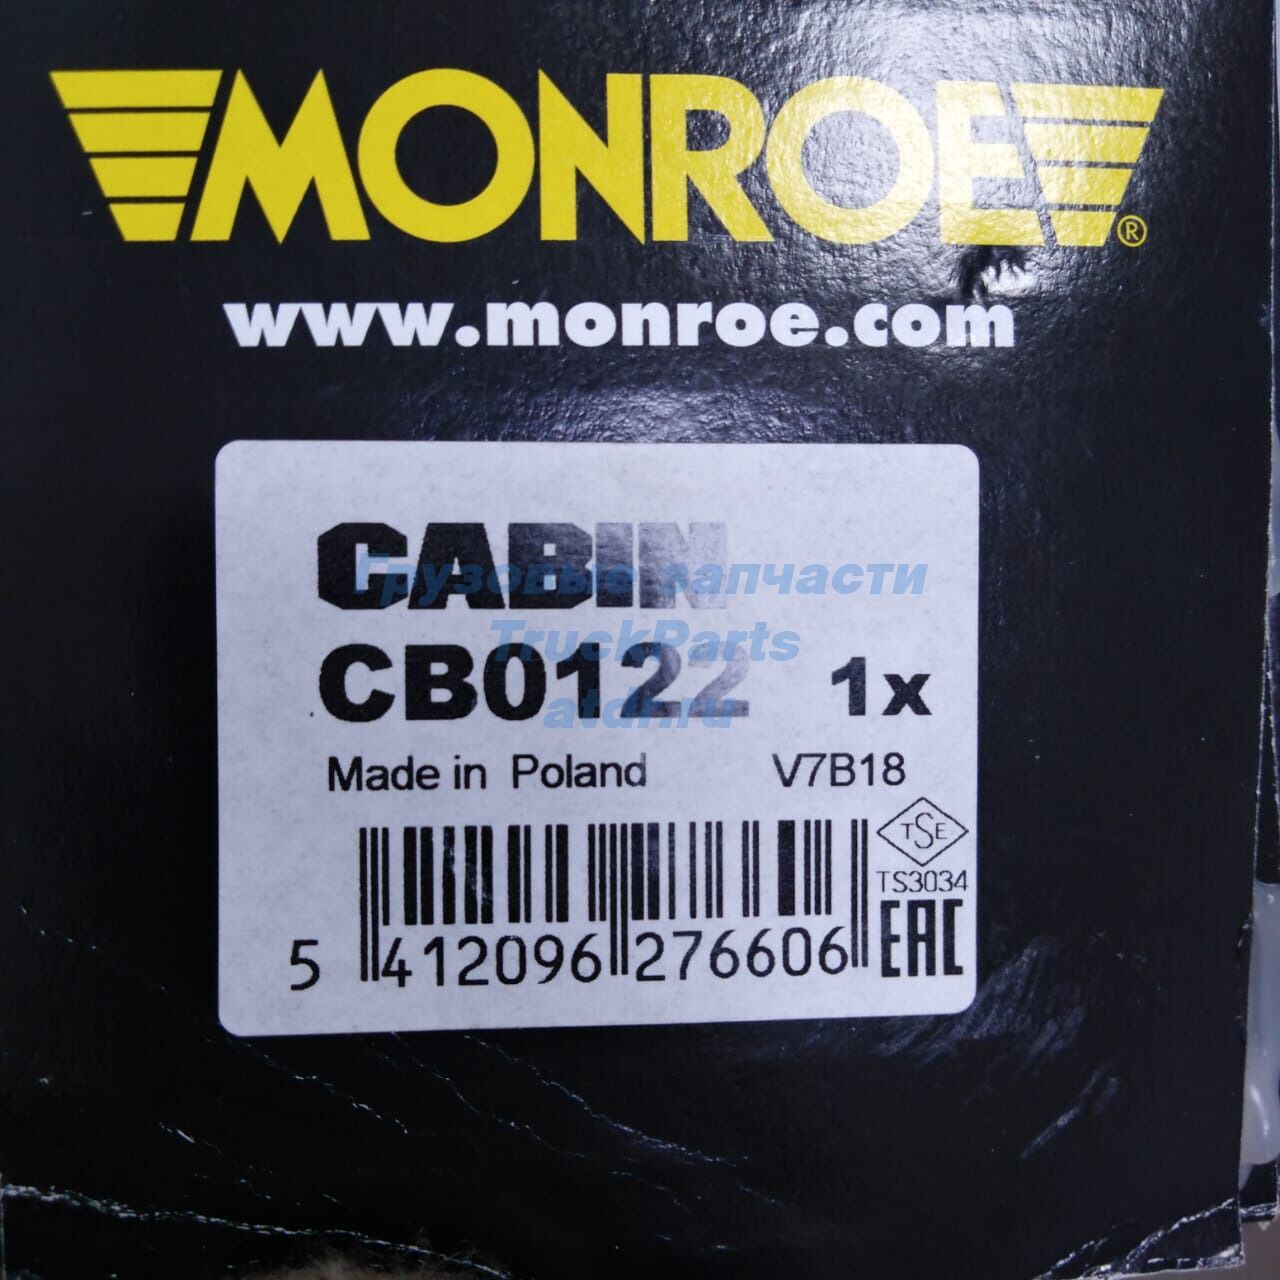 Передний амортизатор пружинный Actros MONROE CB0122